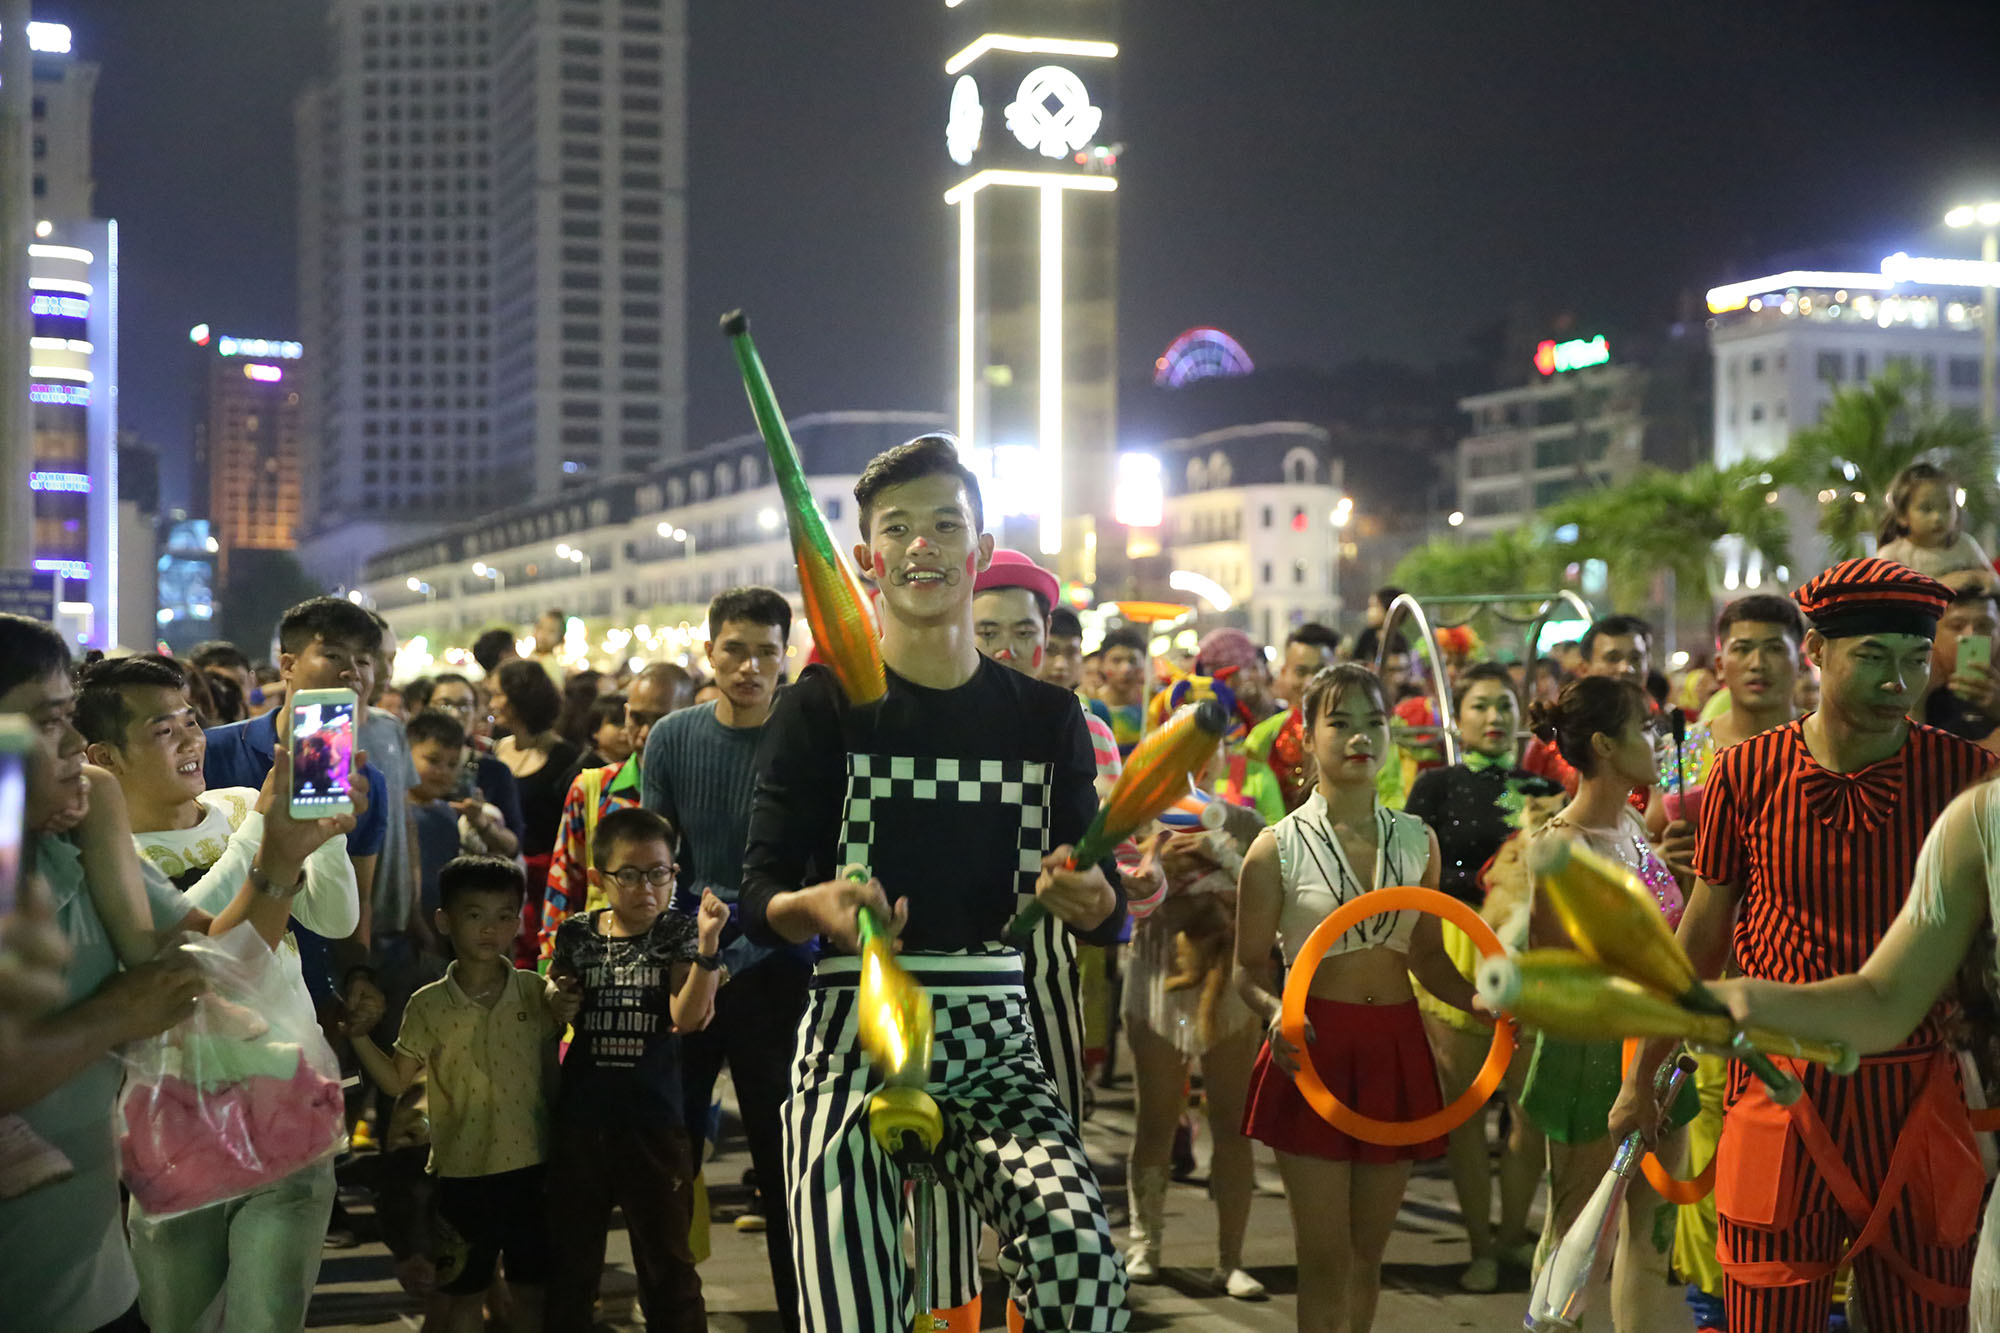 diễu hành xiếc nghệ thuật đường phố là hoạt động mở màn cho Liên hoan Xiếc quốc tế - Hạ Long 2019